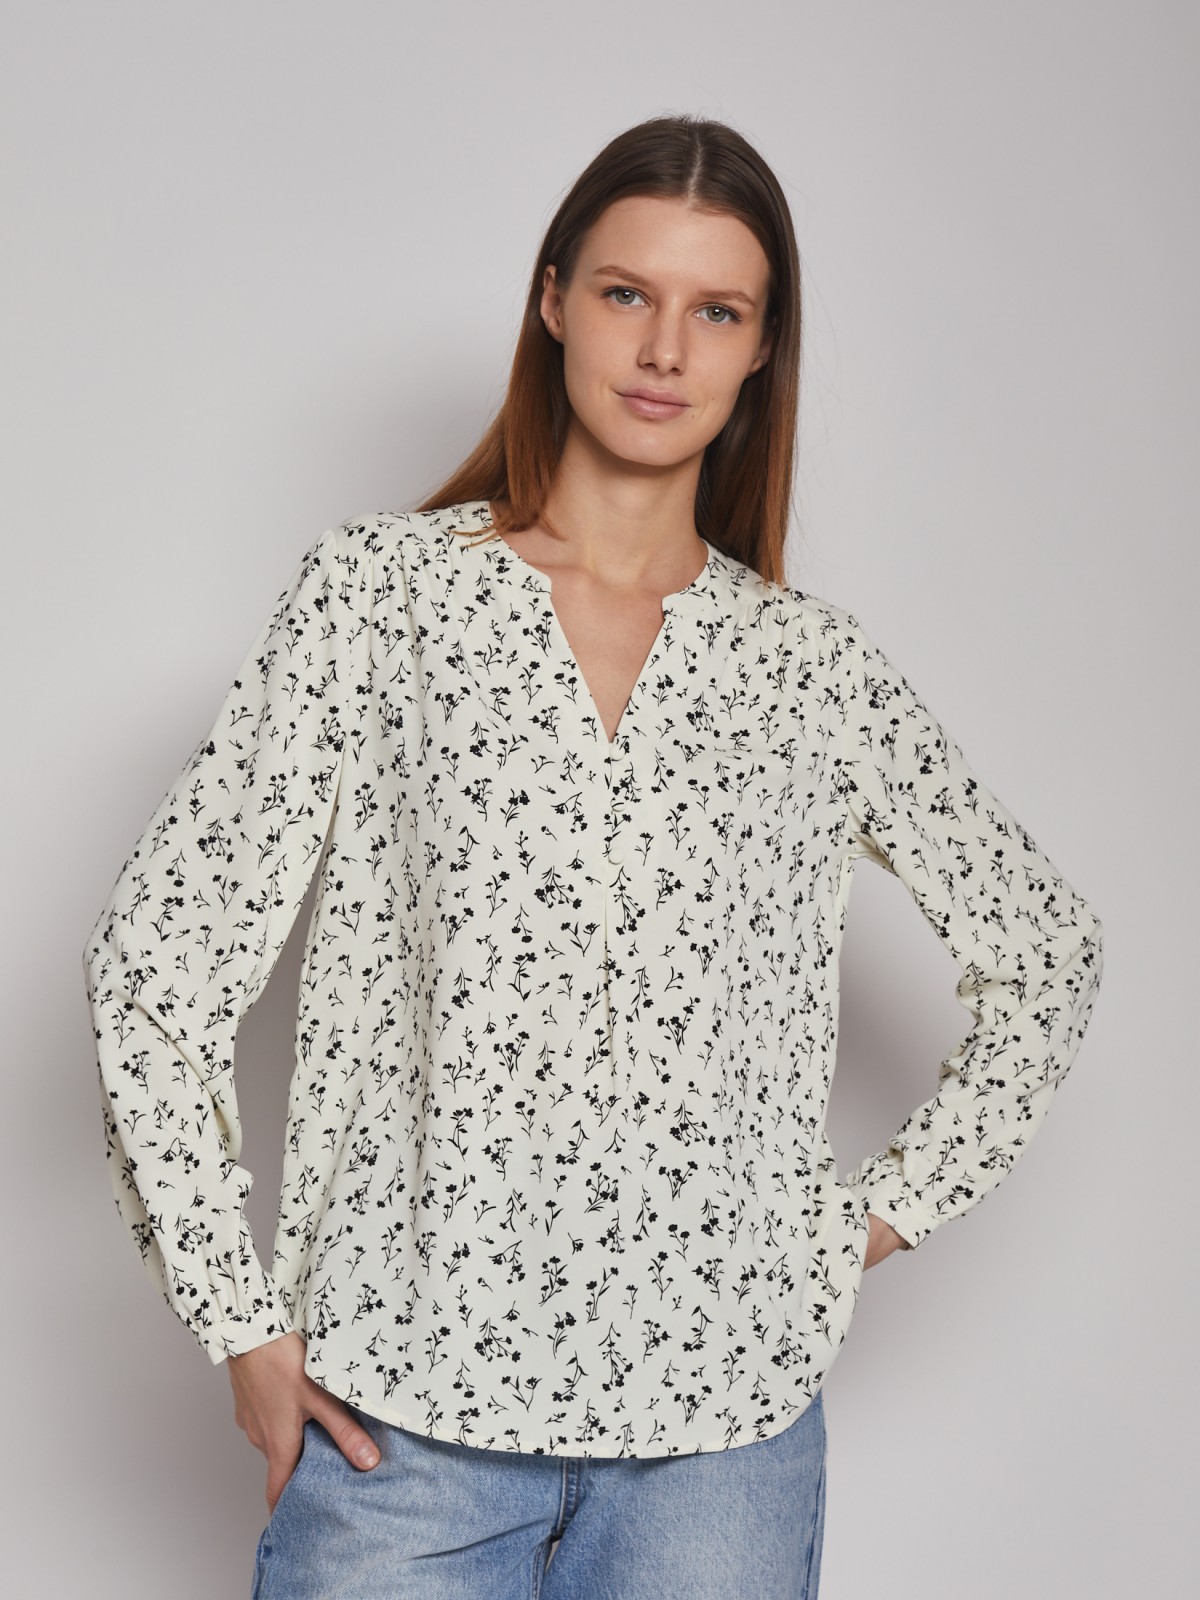 Принтованная блузка с длинным рукавом zolla 023121159212, цвет бежевый, размер XS